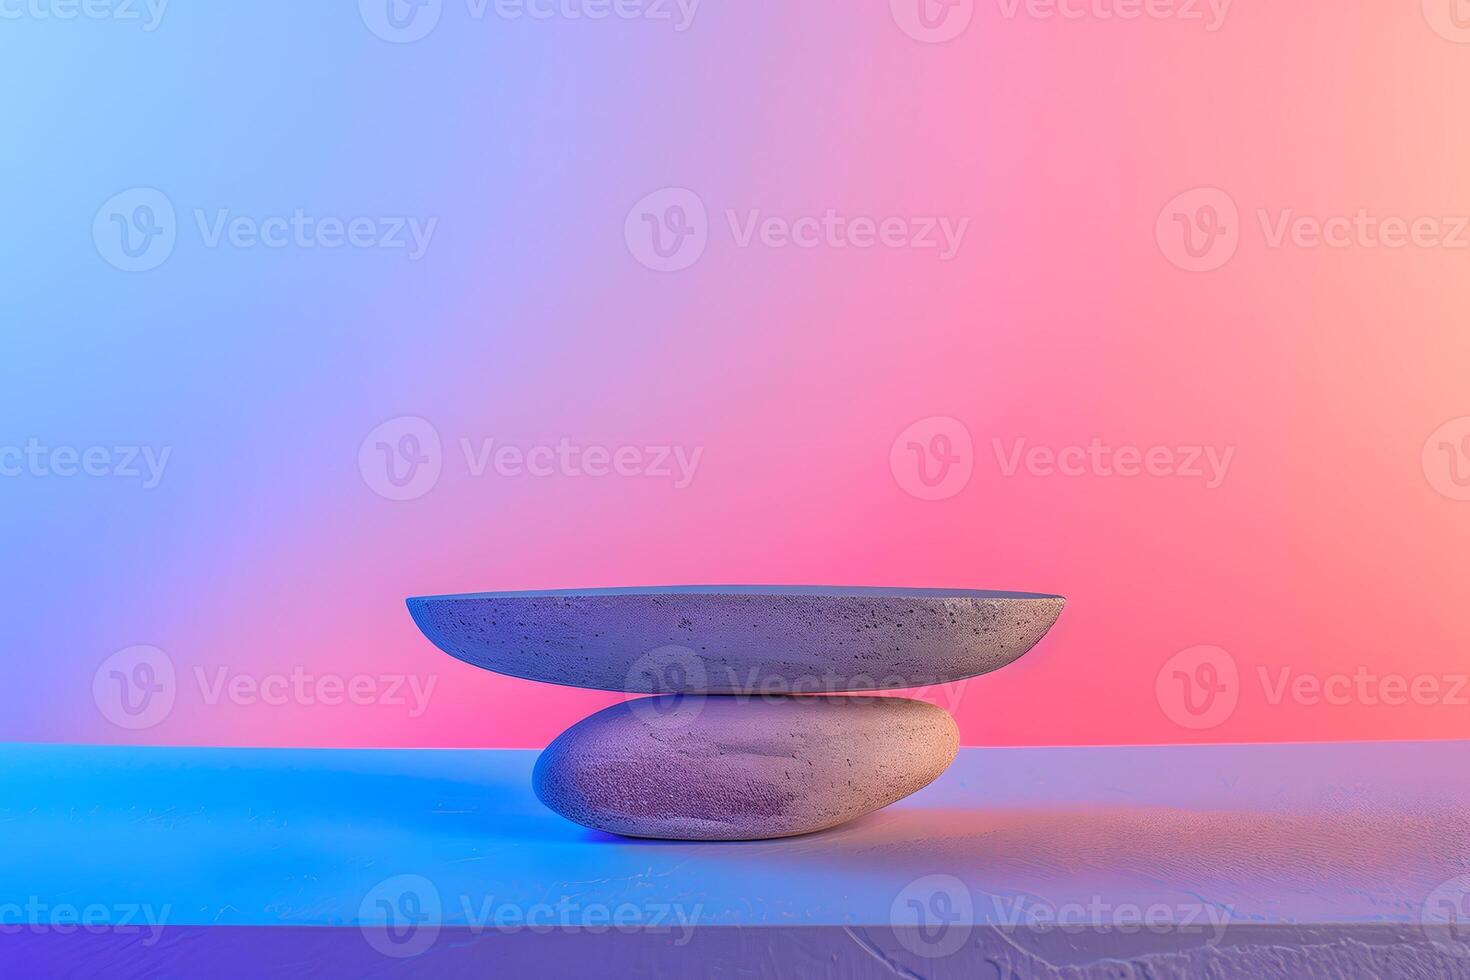 ai gegenereerd rustig balans van twee stenen tegen een levendig roze en blauw backdrop foto